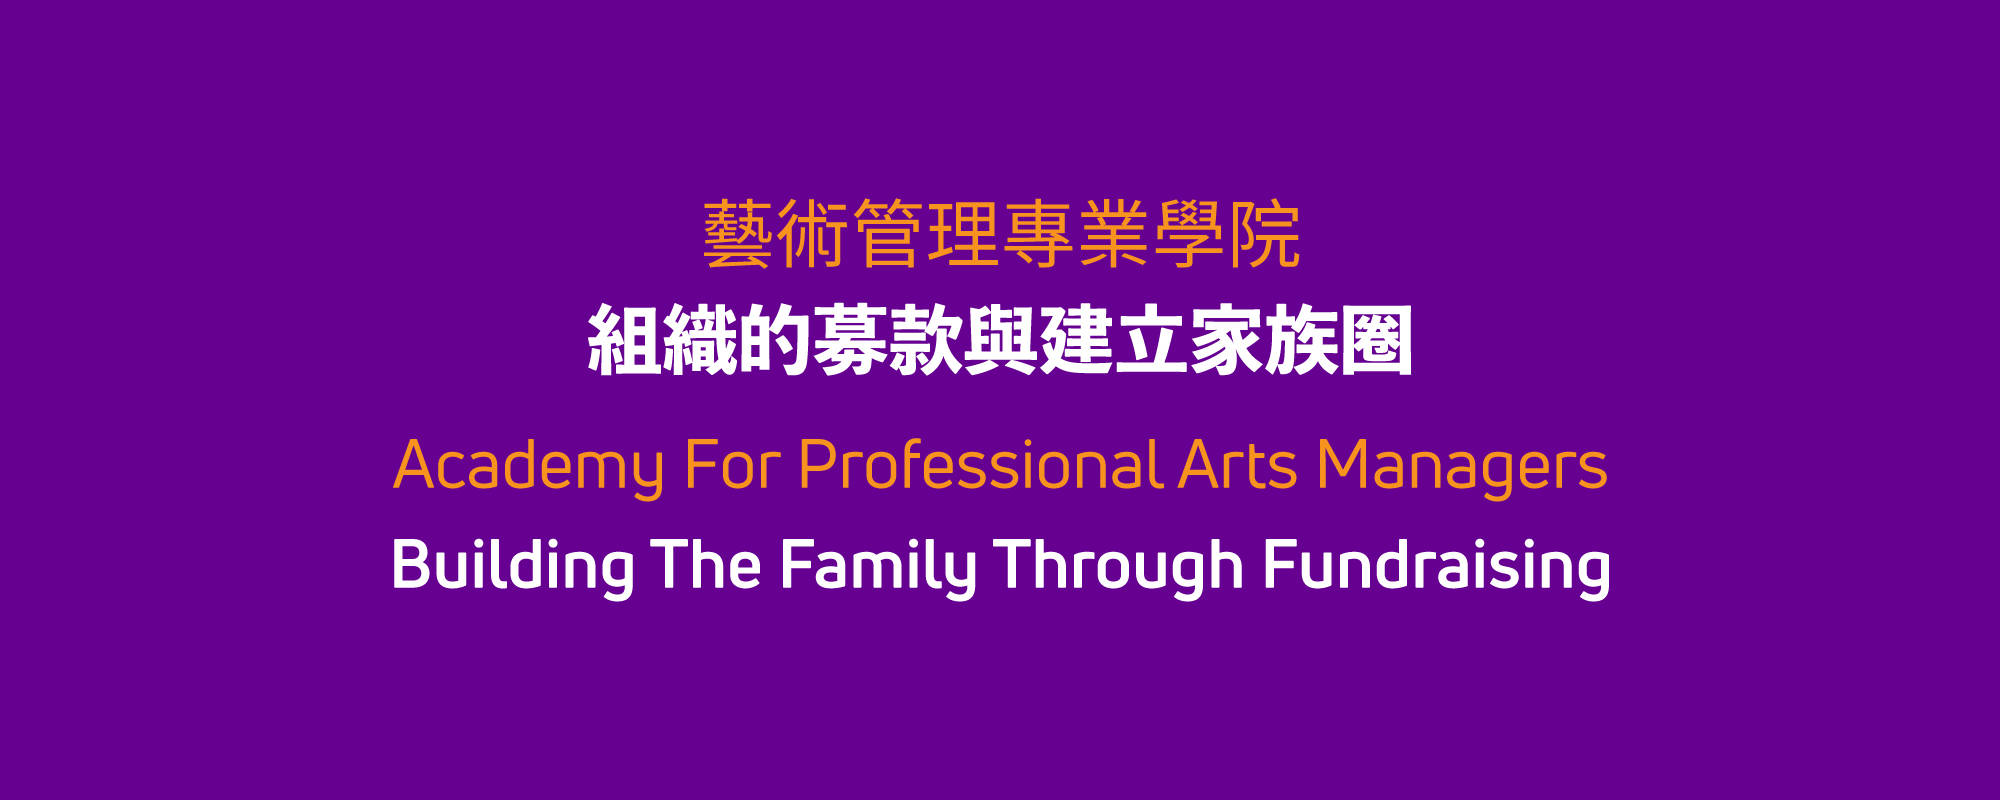 藝術管理專業學院—組織的募款與建立家族圈